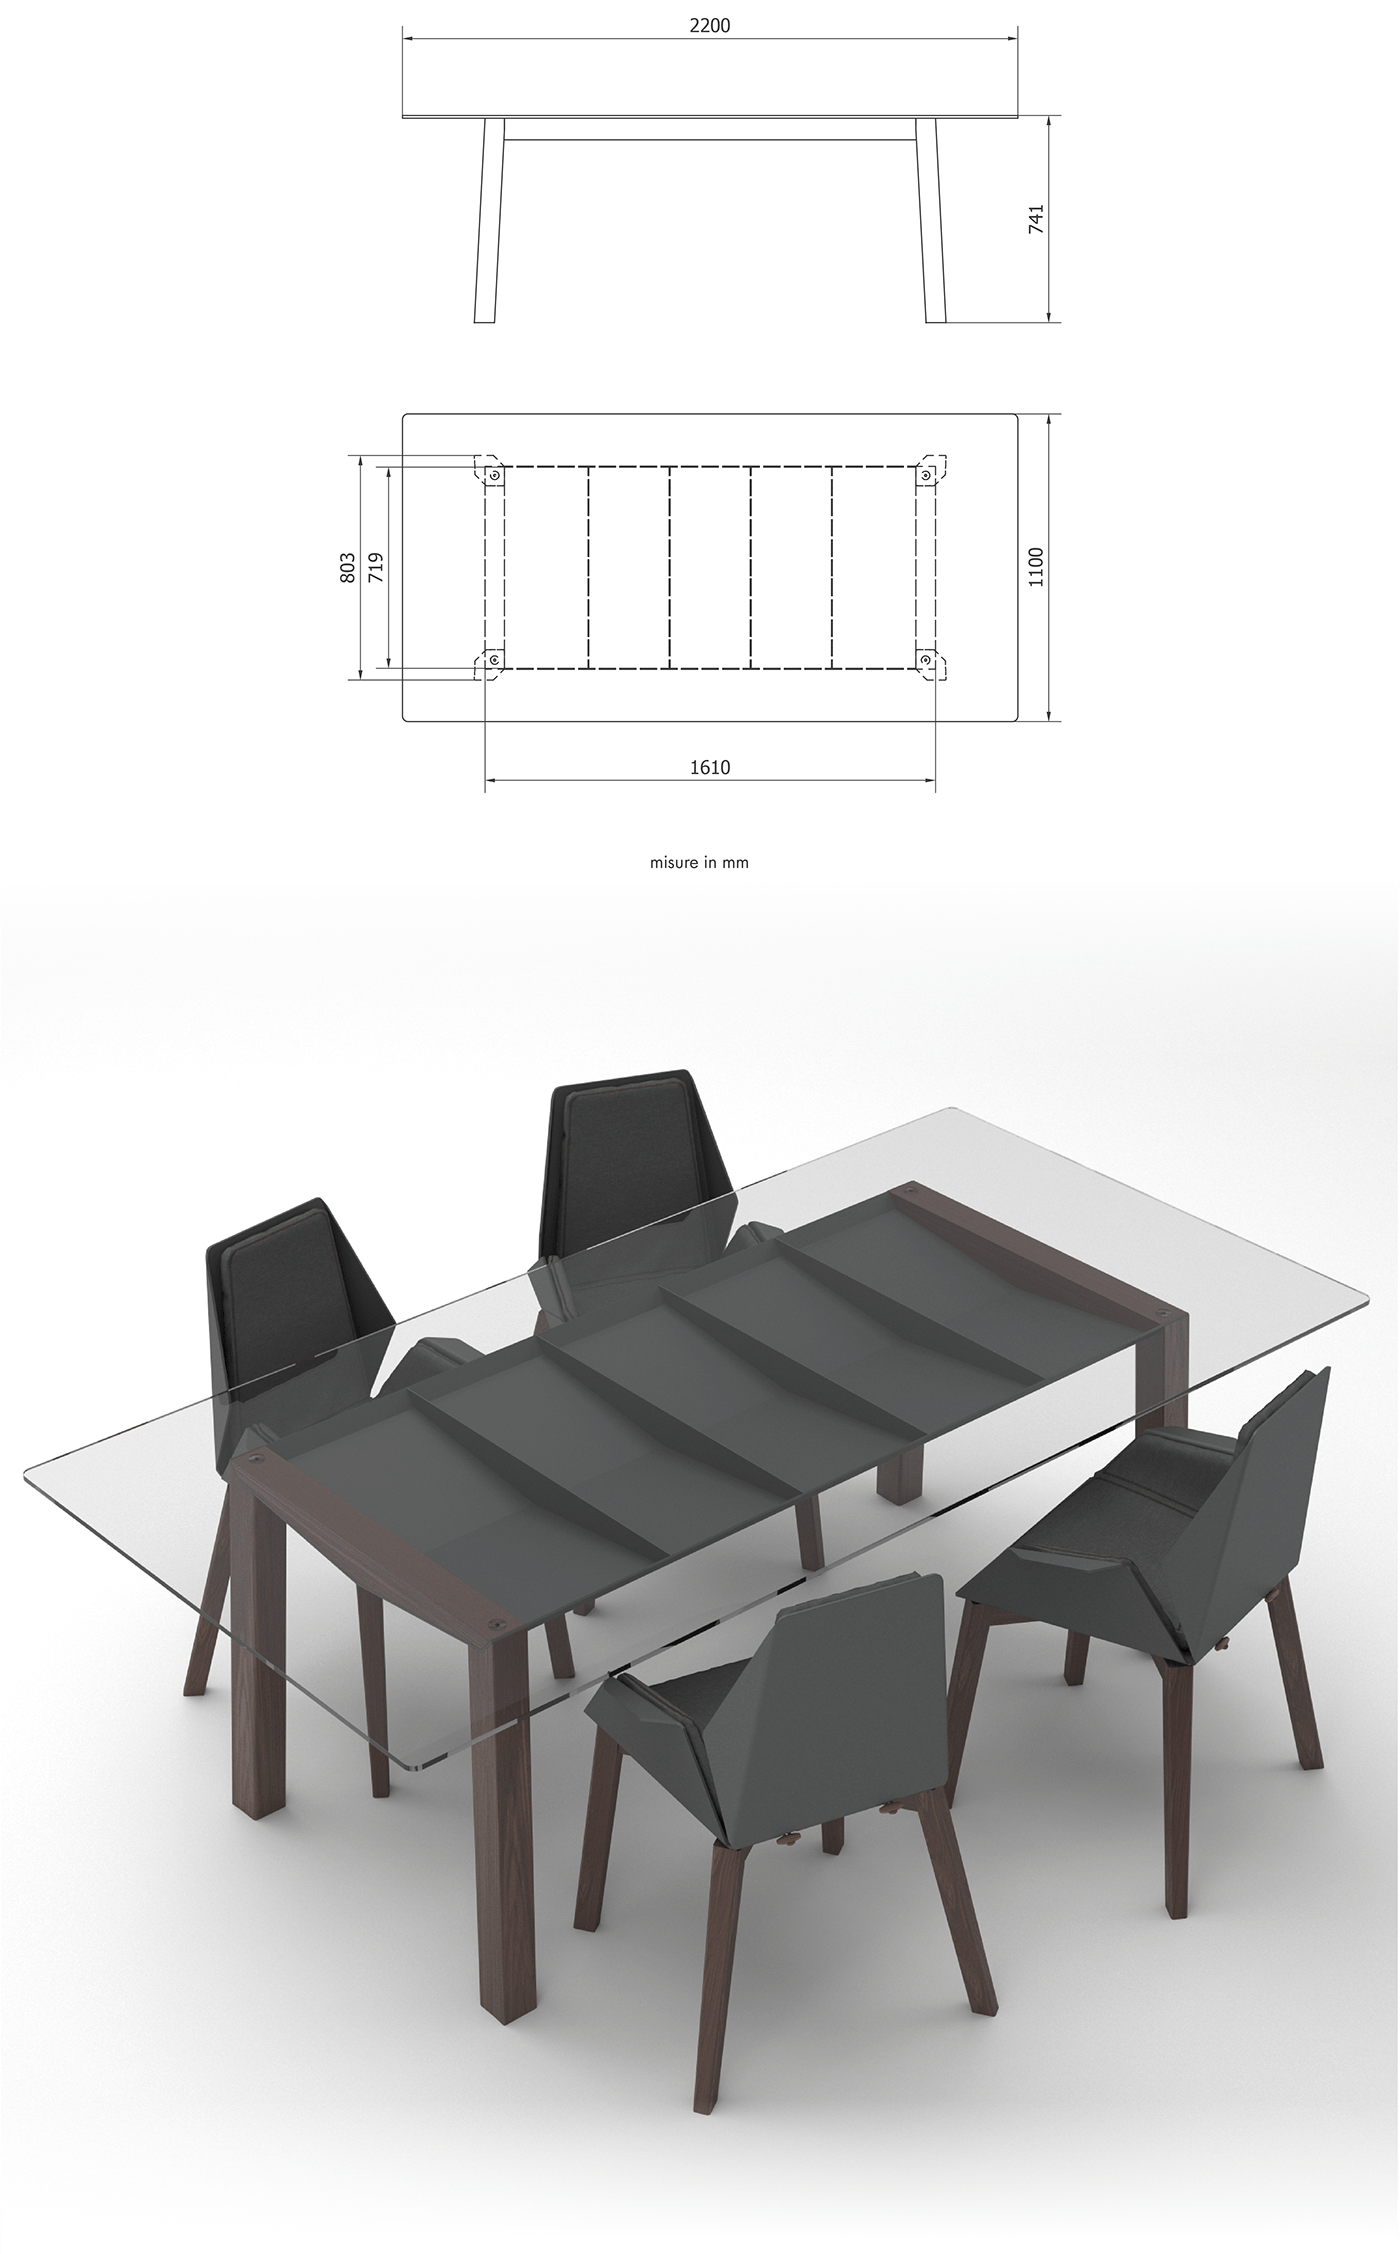 design design di prodotto furniture product product design  table tavolo wing